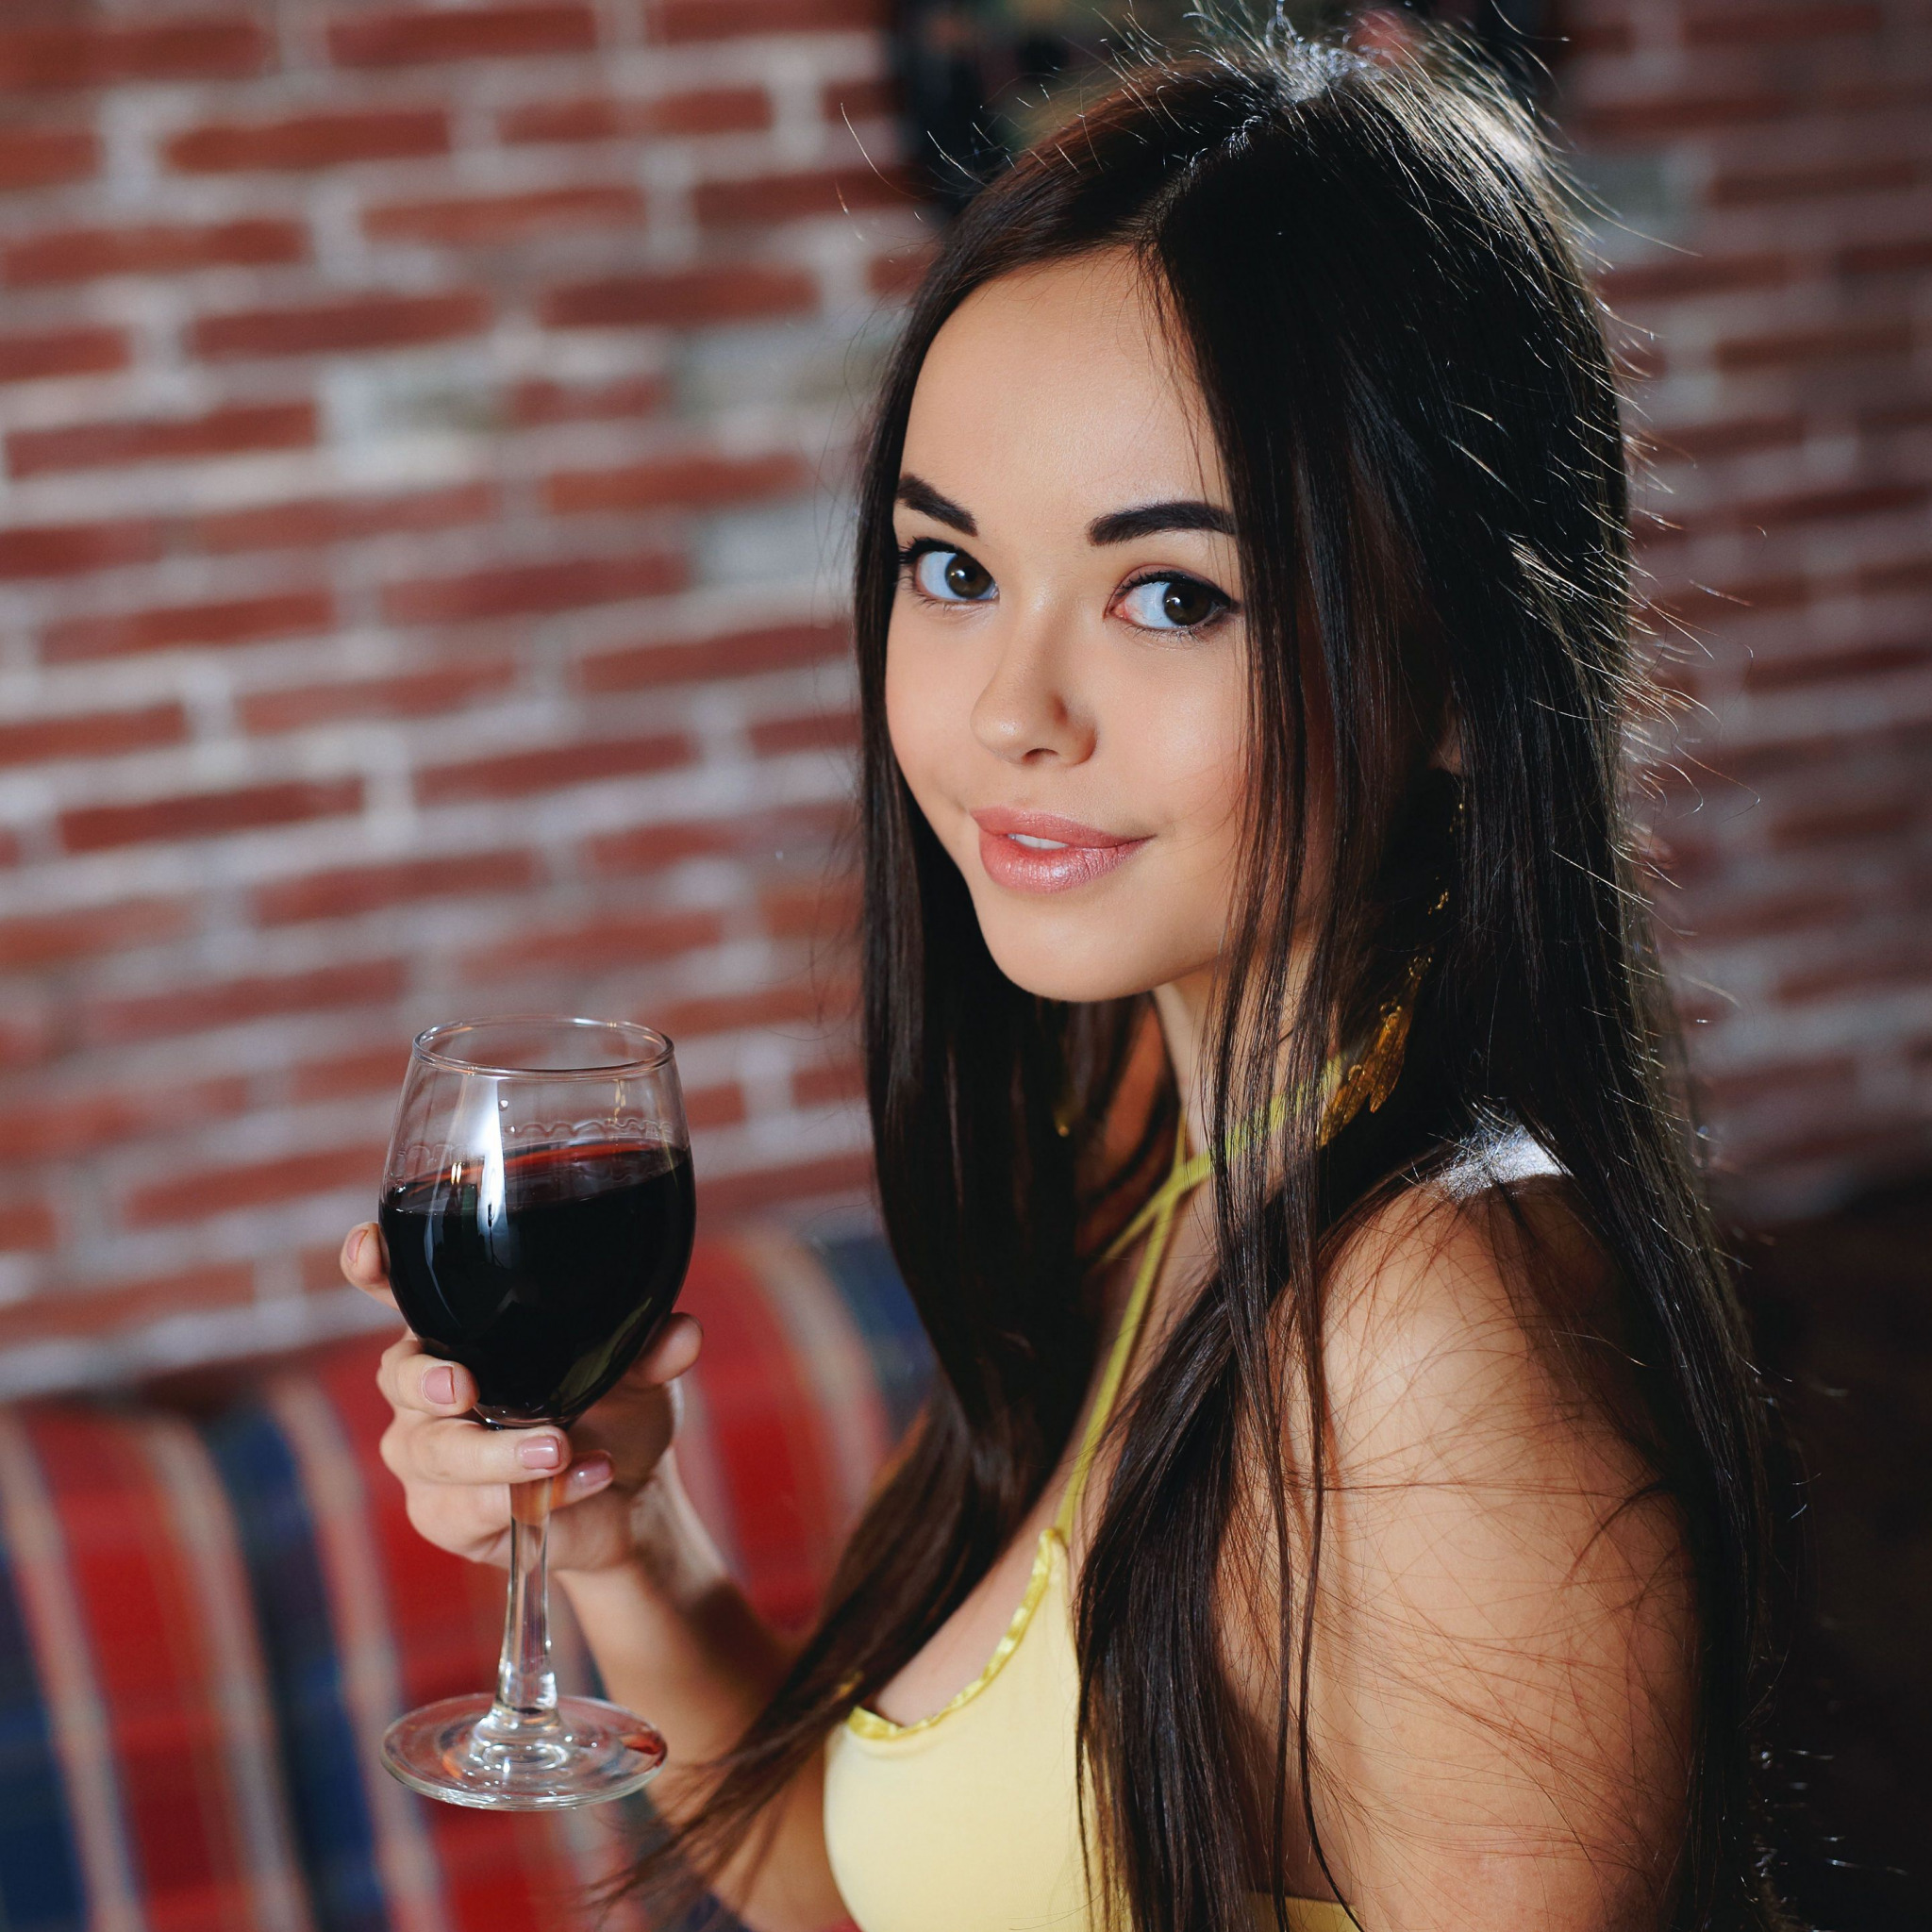 как правильно пить вино, как правильно пить вино красное, как правильно пить сухое вино, как правильно пить красное сухое вино, как правильно пить белое вино, как правильно пить полусладкое вино, винный этикет, винные бокалы этикет, как держать винный бокал по этикету